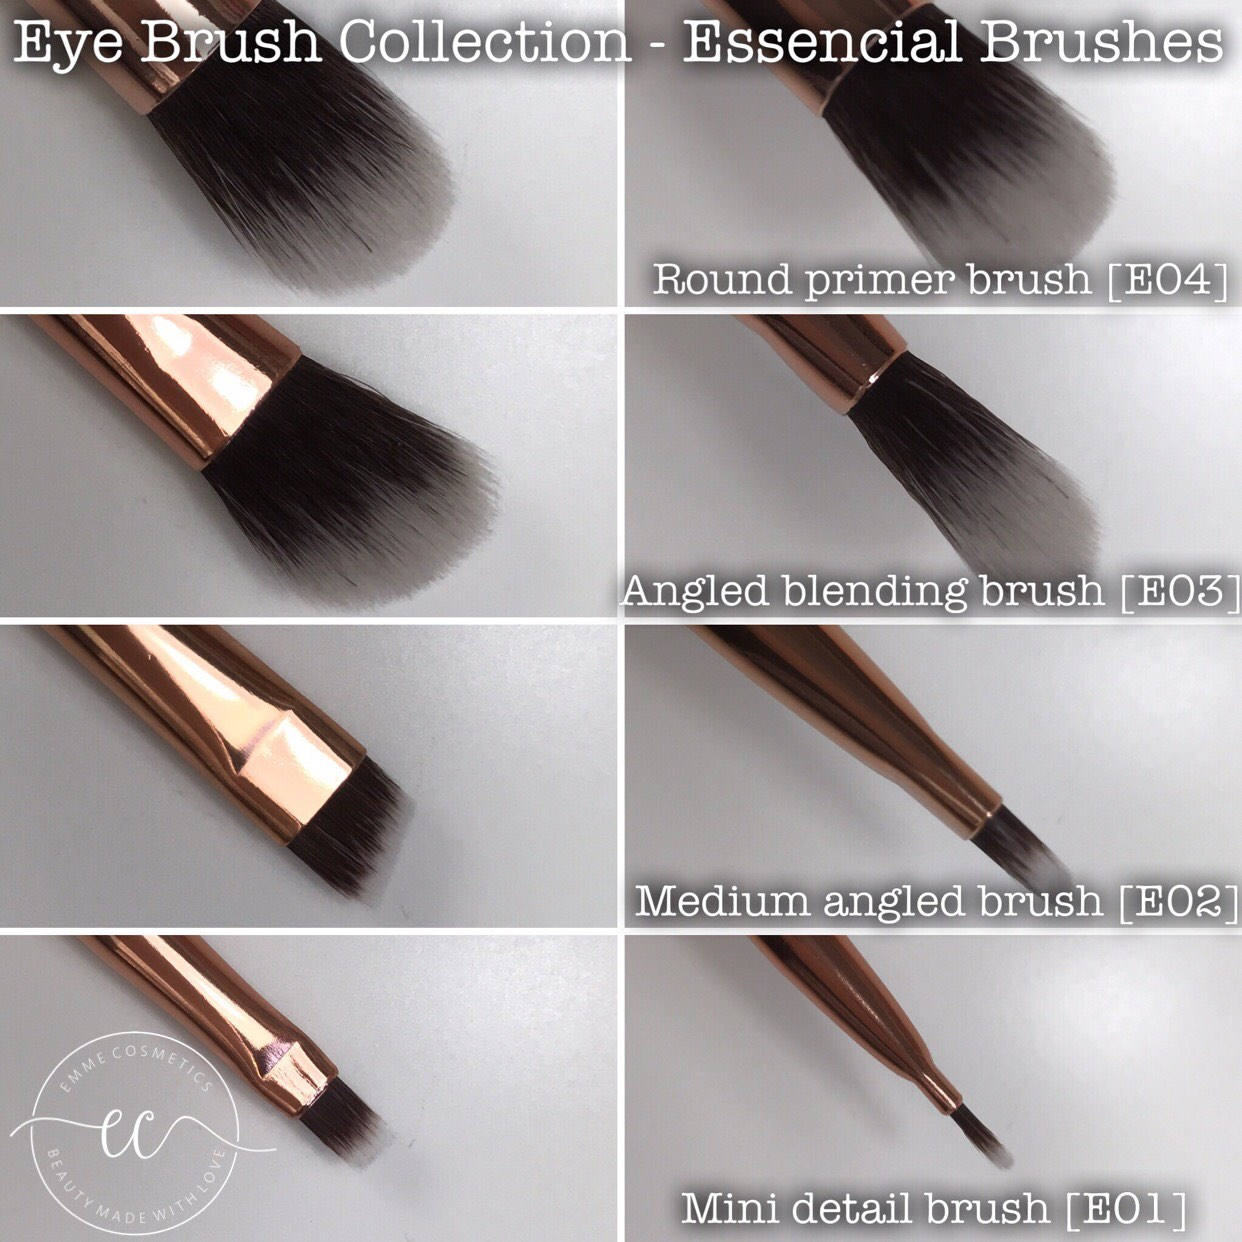 E03 - Angled Blending Brush